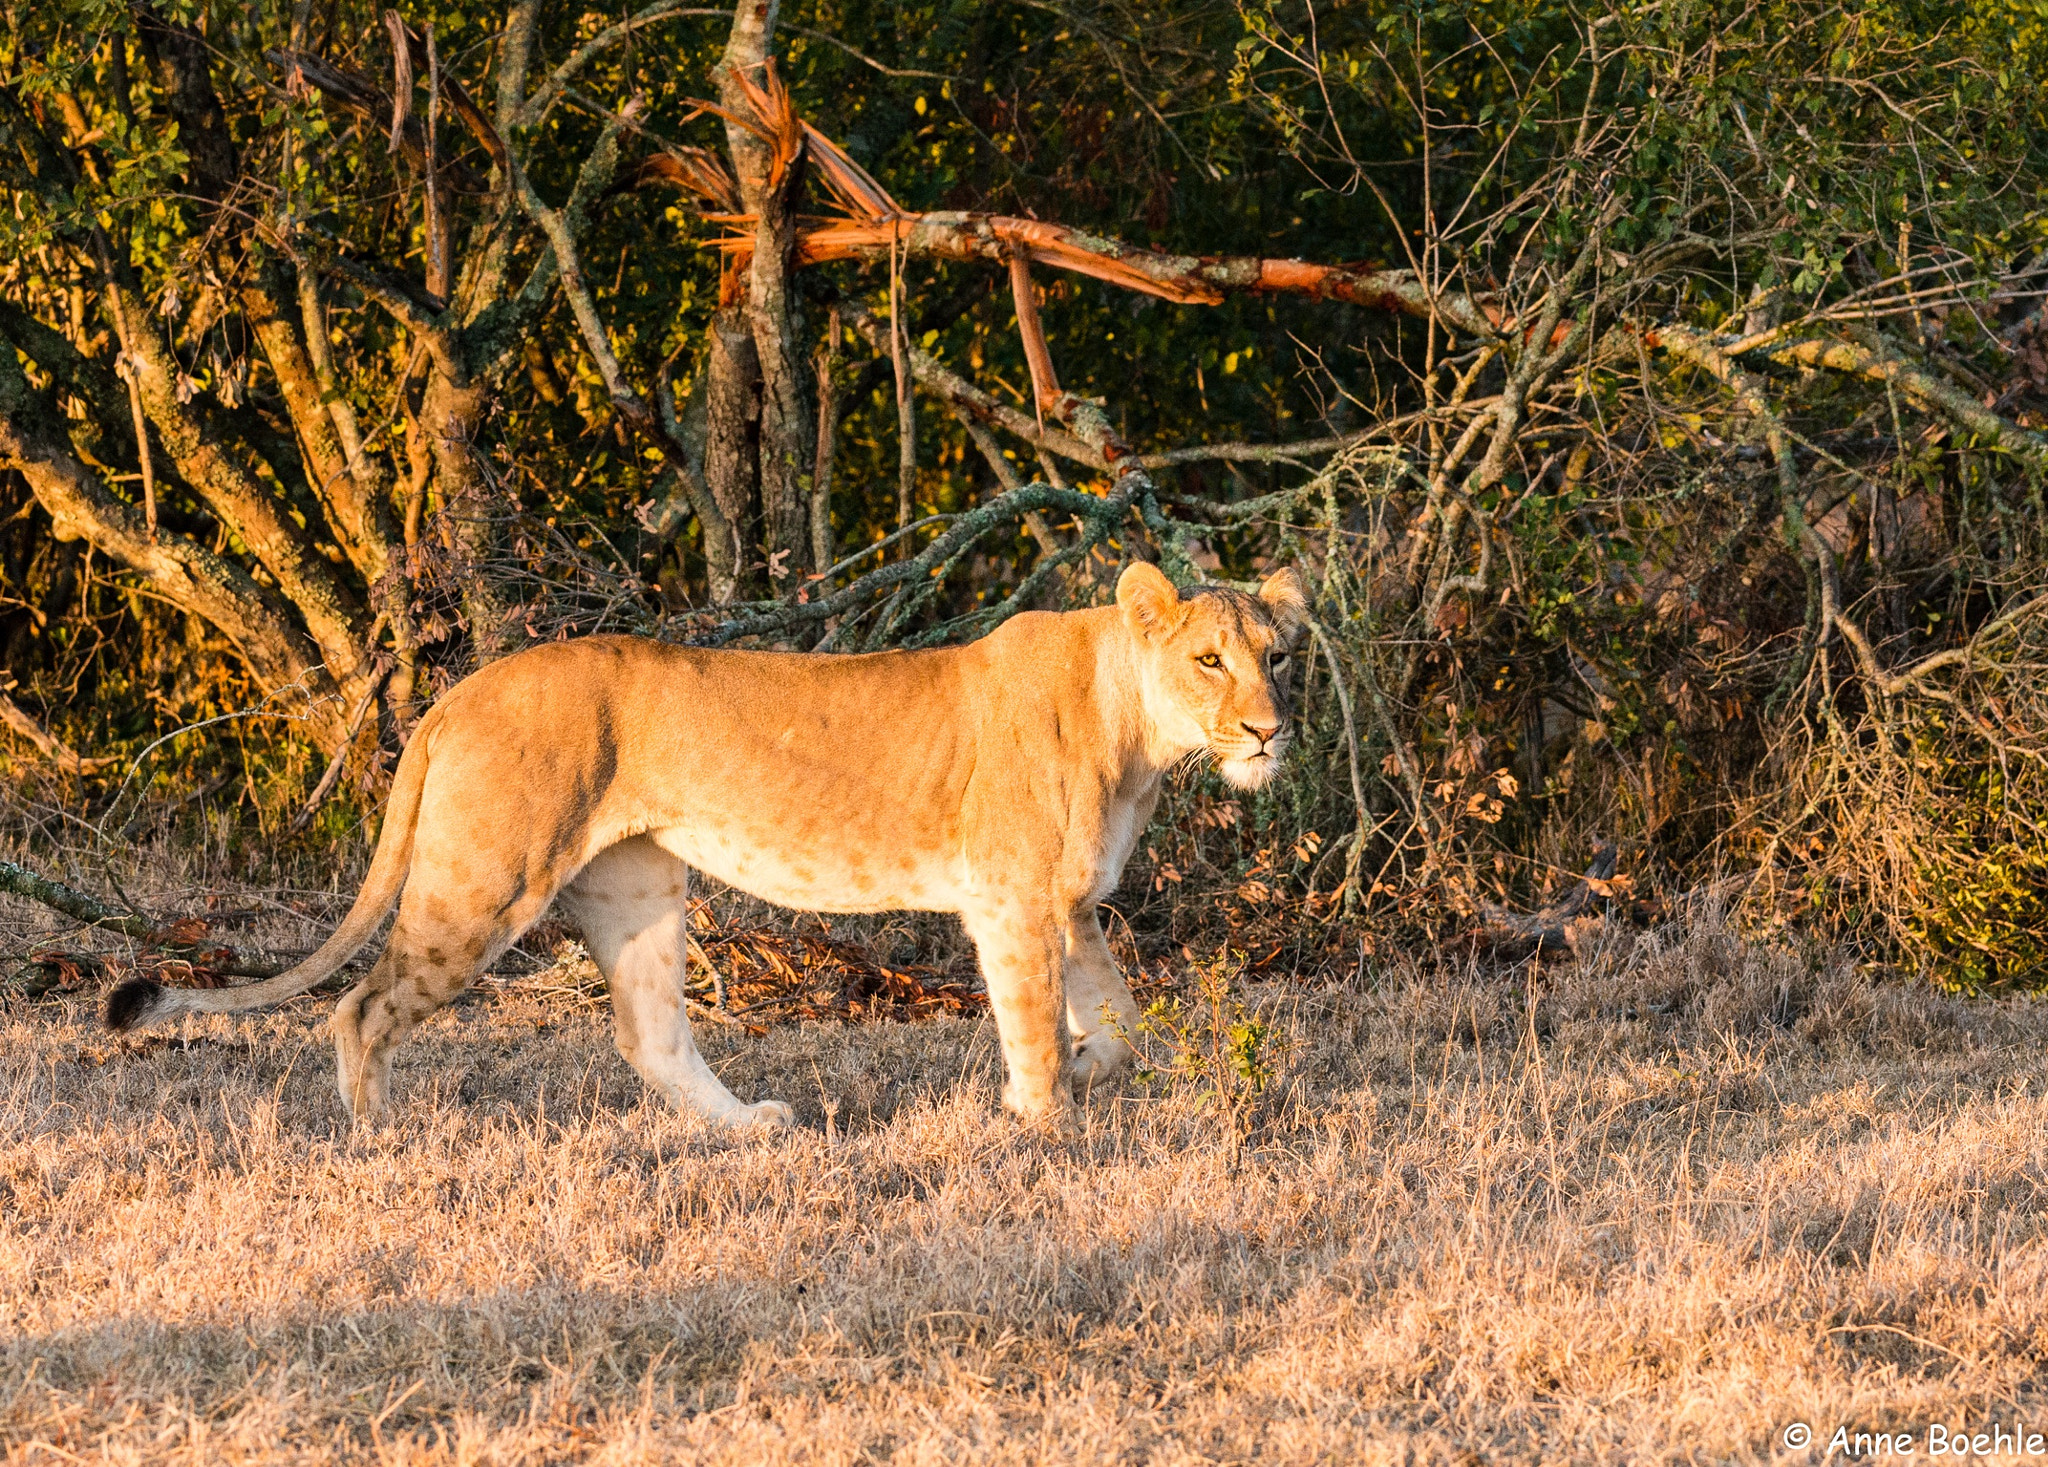 Nikon D800 + Nikon AF-S Nikkor 200-400mm F4G ED VR II sample photo. Lioness in morning light, ol pejeta conservancy, kenya photography